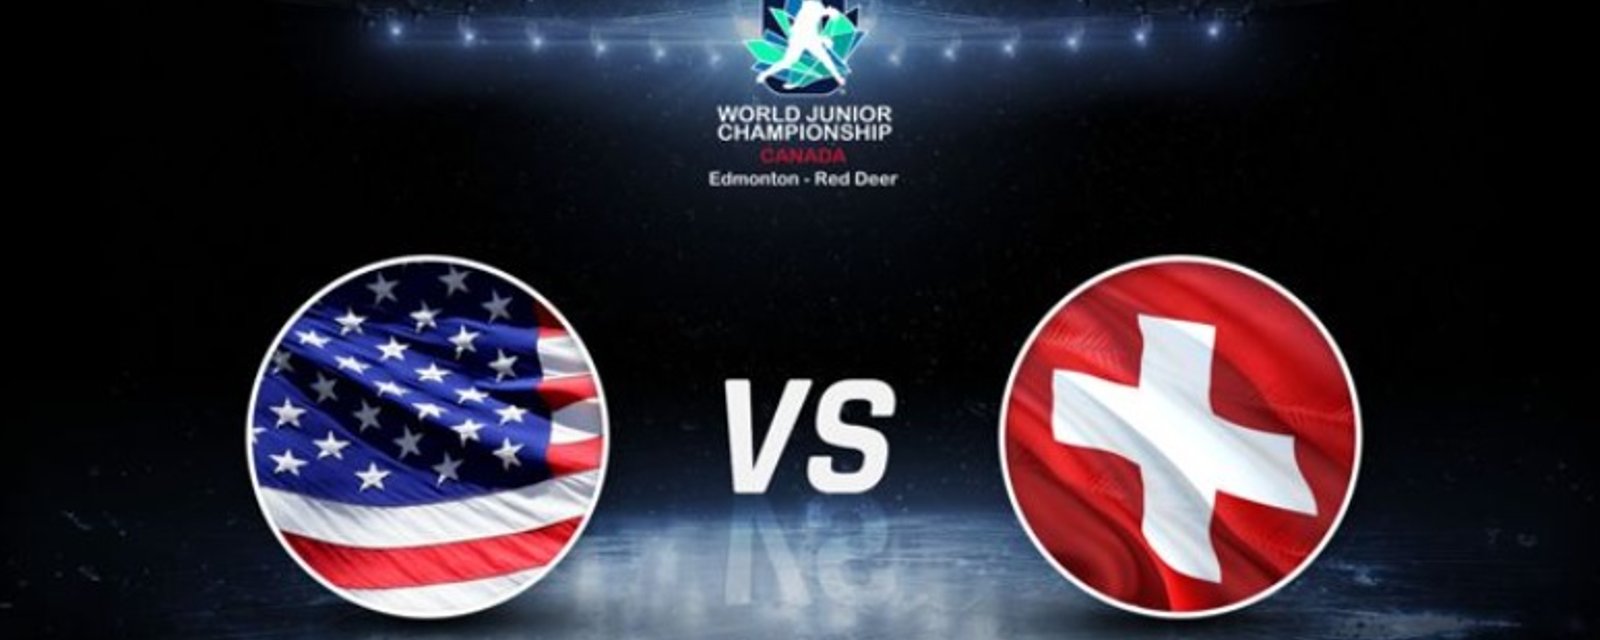 Les USA pourraient perdre leur match contre la Suisse par défaut